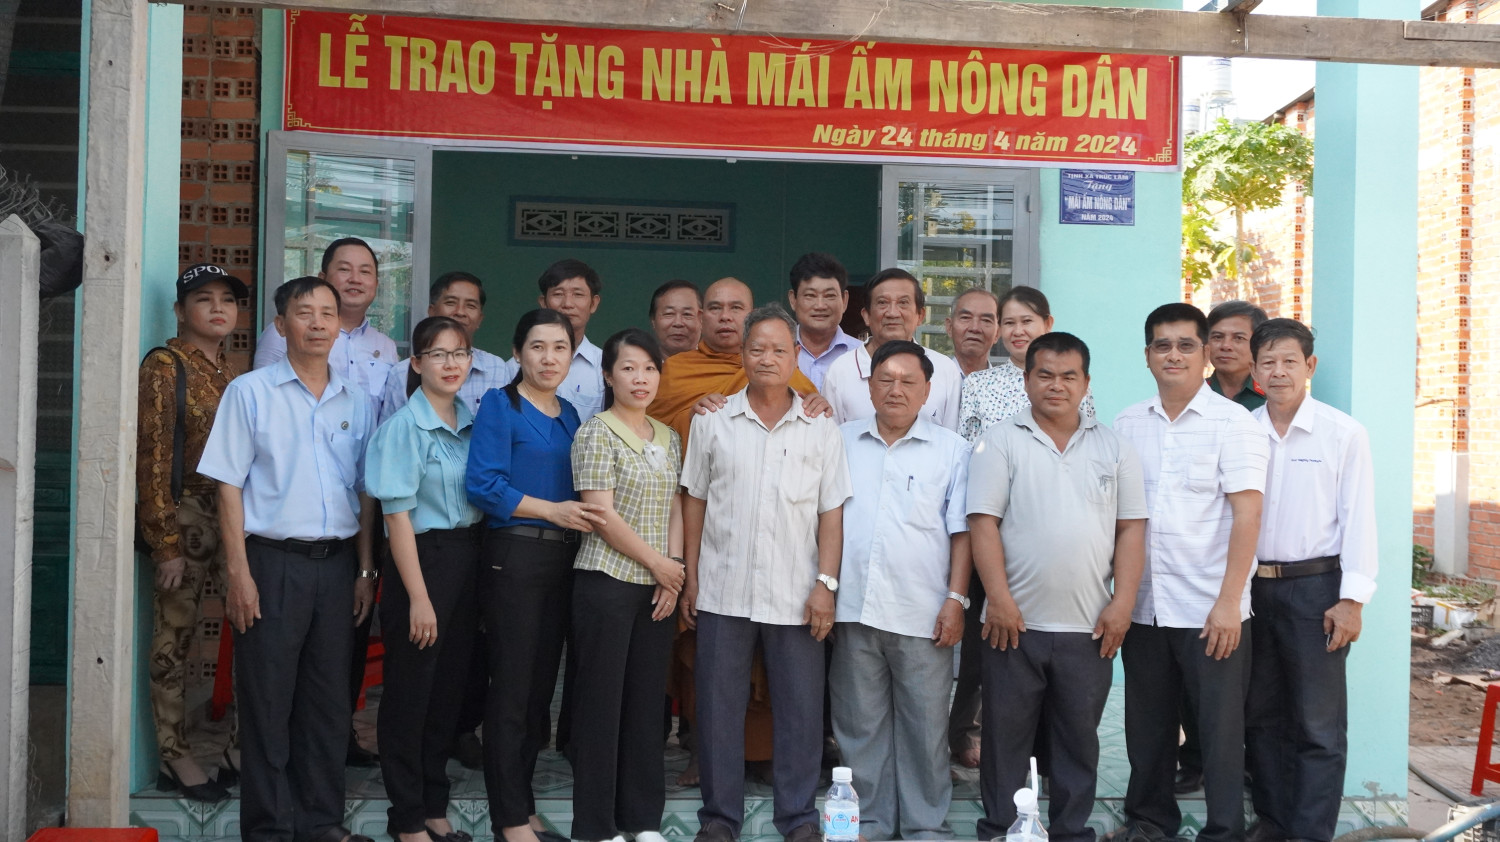 Hội nông dân thị trấn Tân Biên trao tặng nhà mái ấm nông dân cho hội viên khó khăn về nhà ở